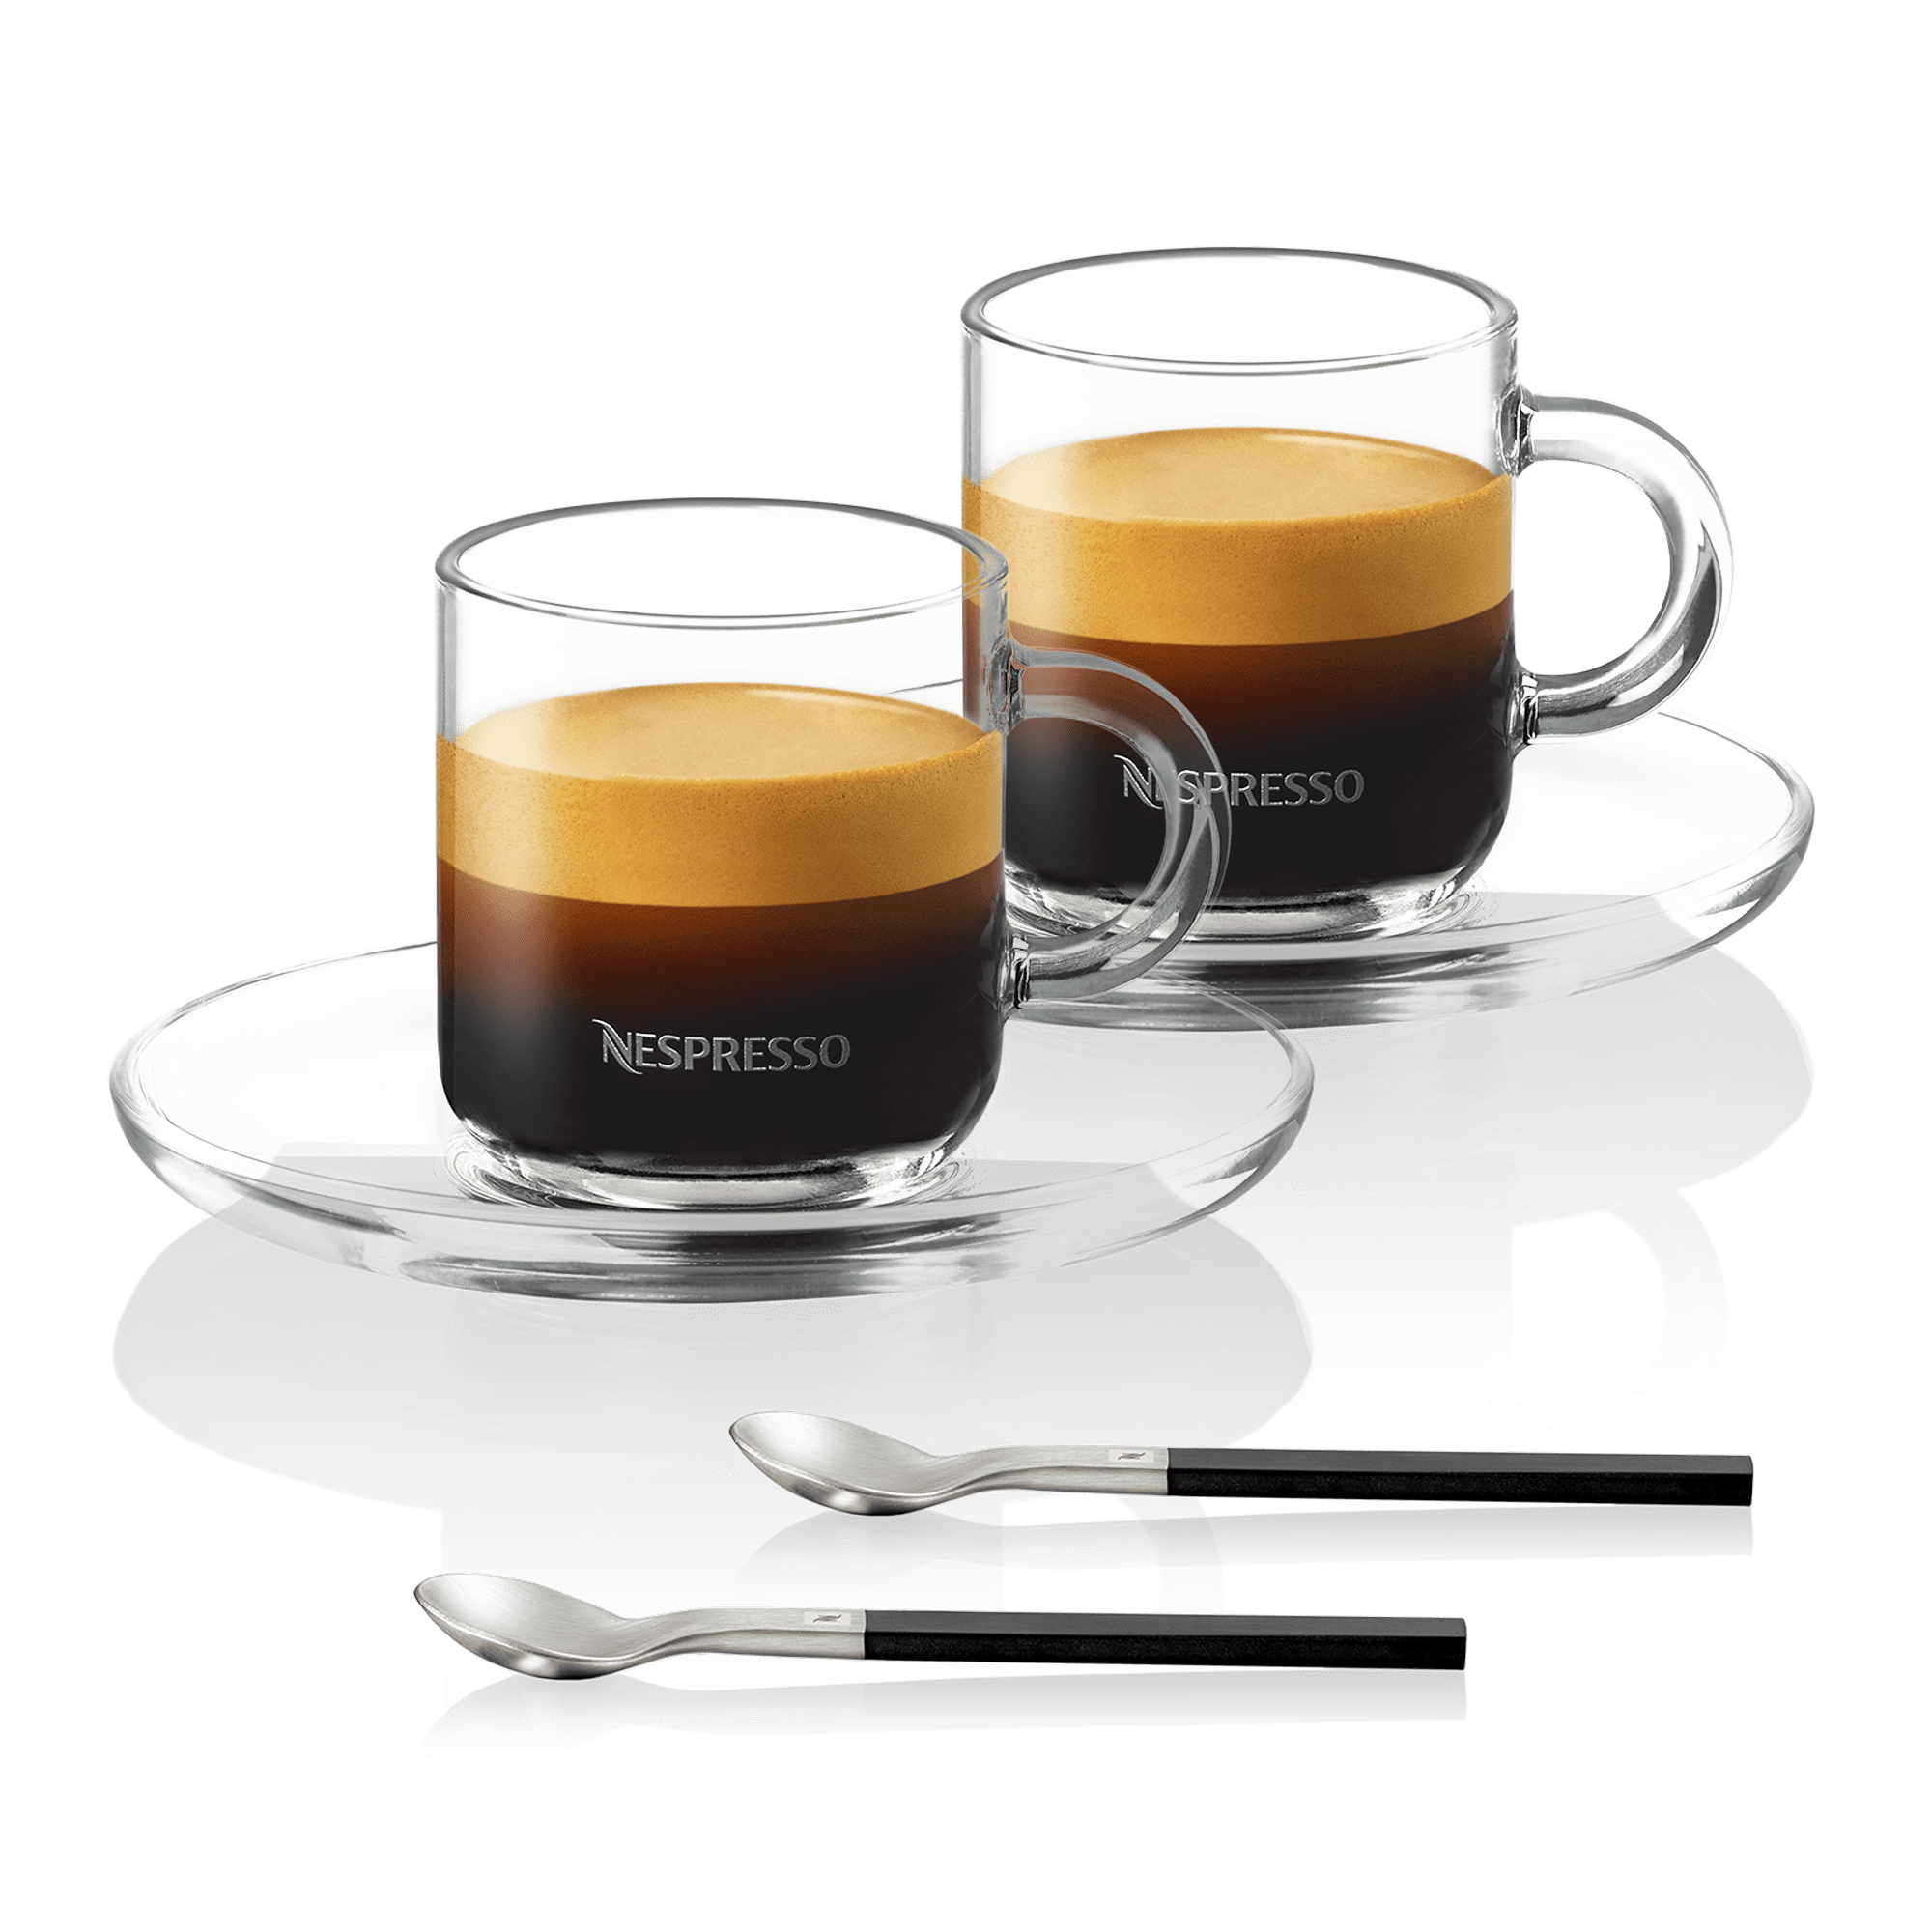 https://www.nespresso.com/ecom/medias/sys_master/public/14089979232286/Accessories-responsive-product-square-2000x2000px-Espresso-w-saucer-set.png